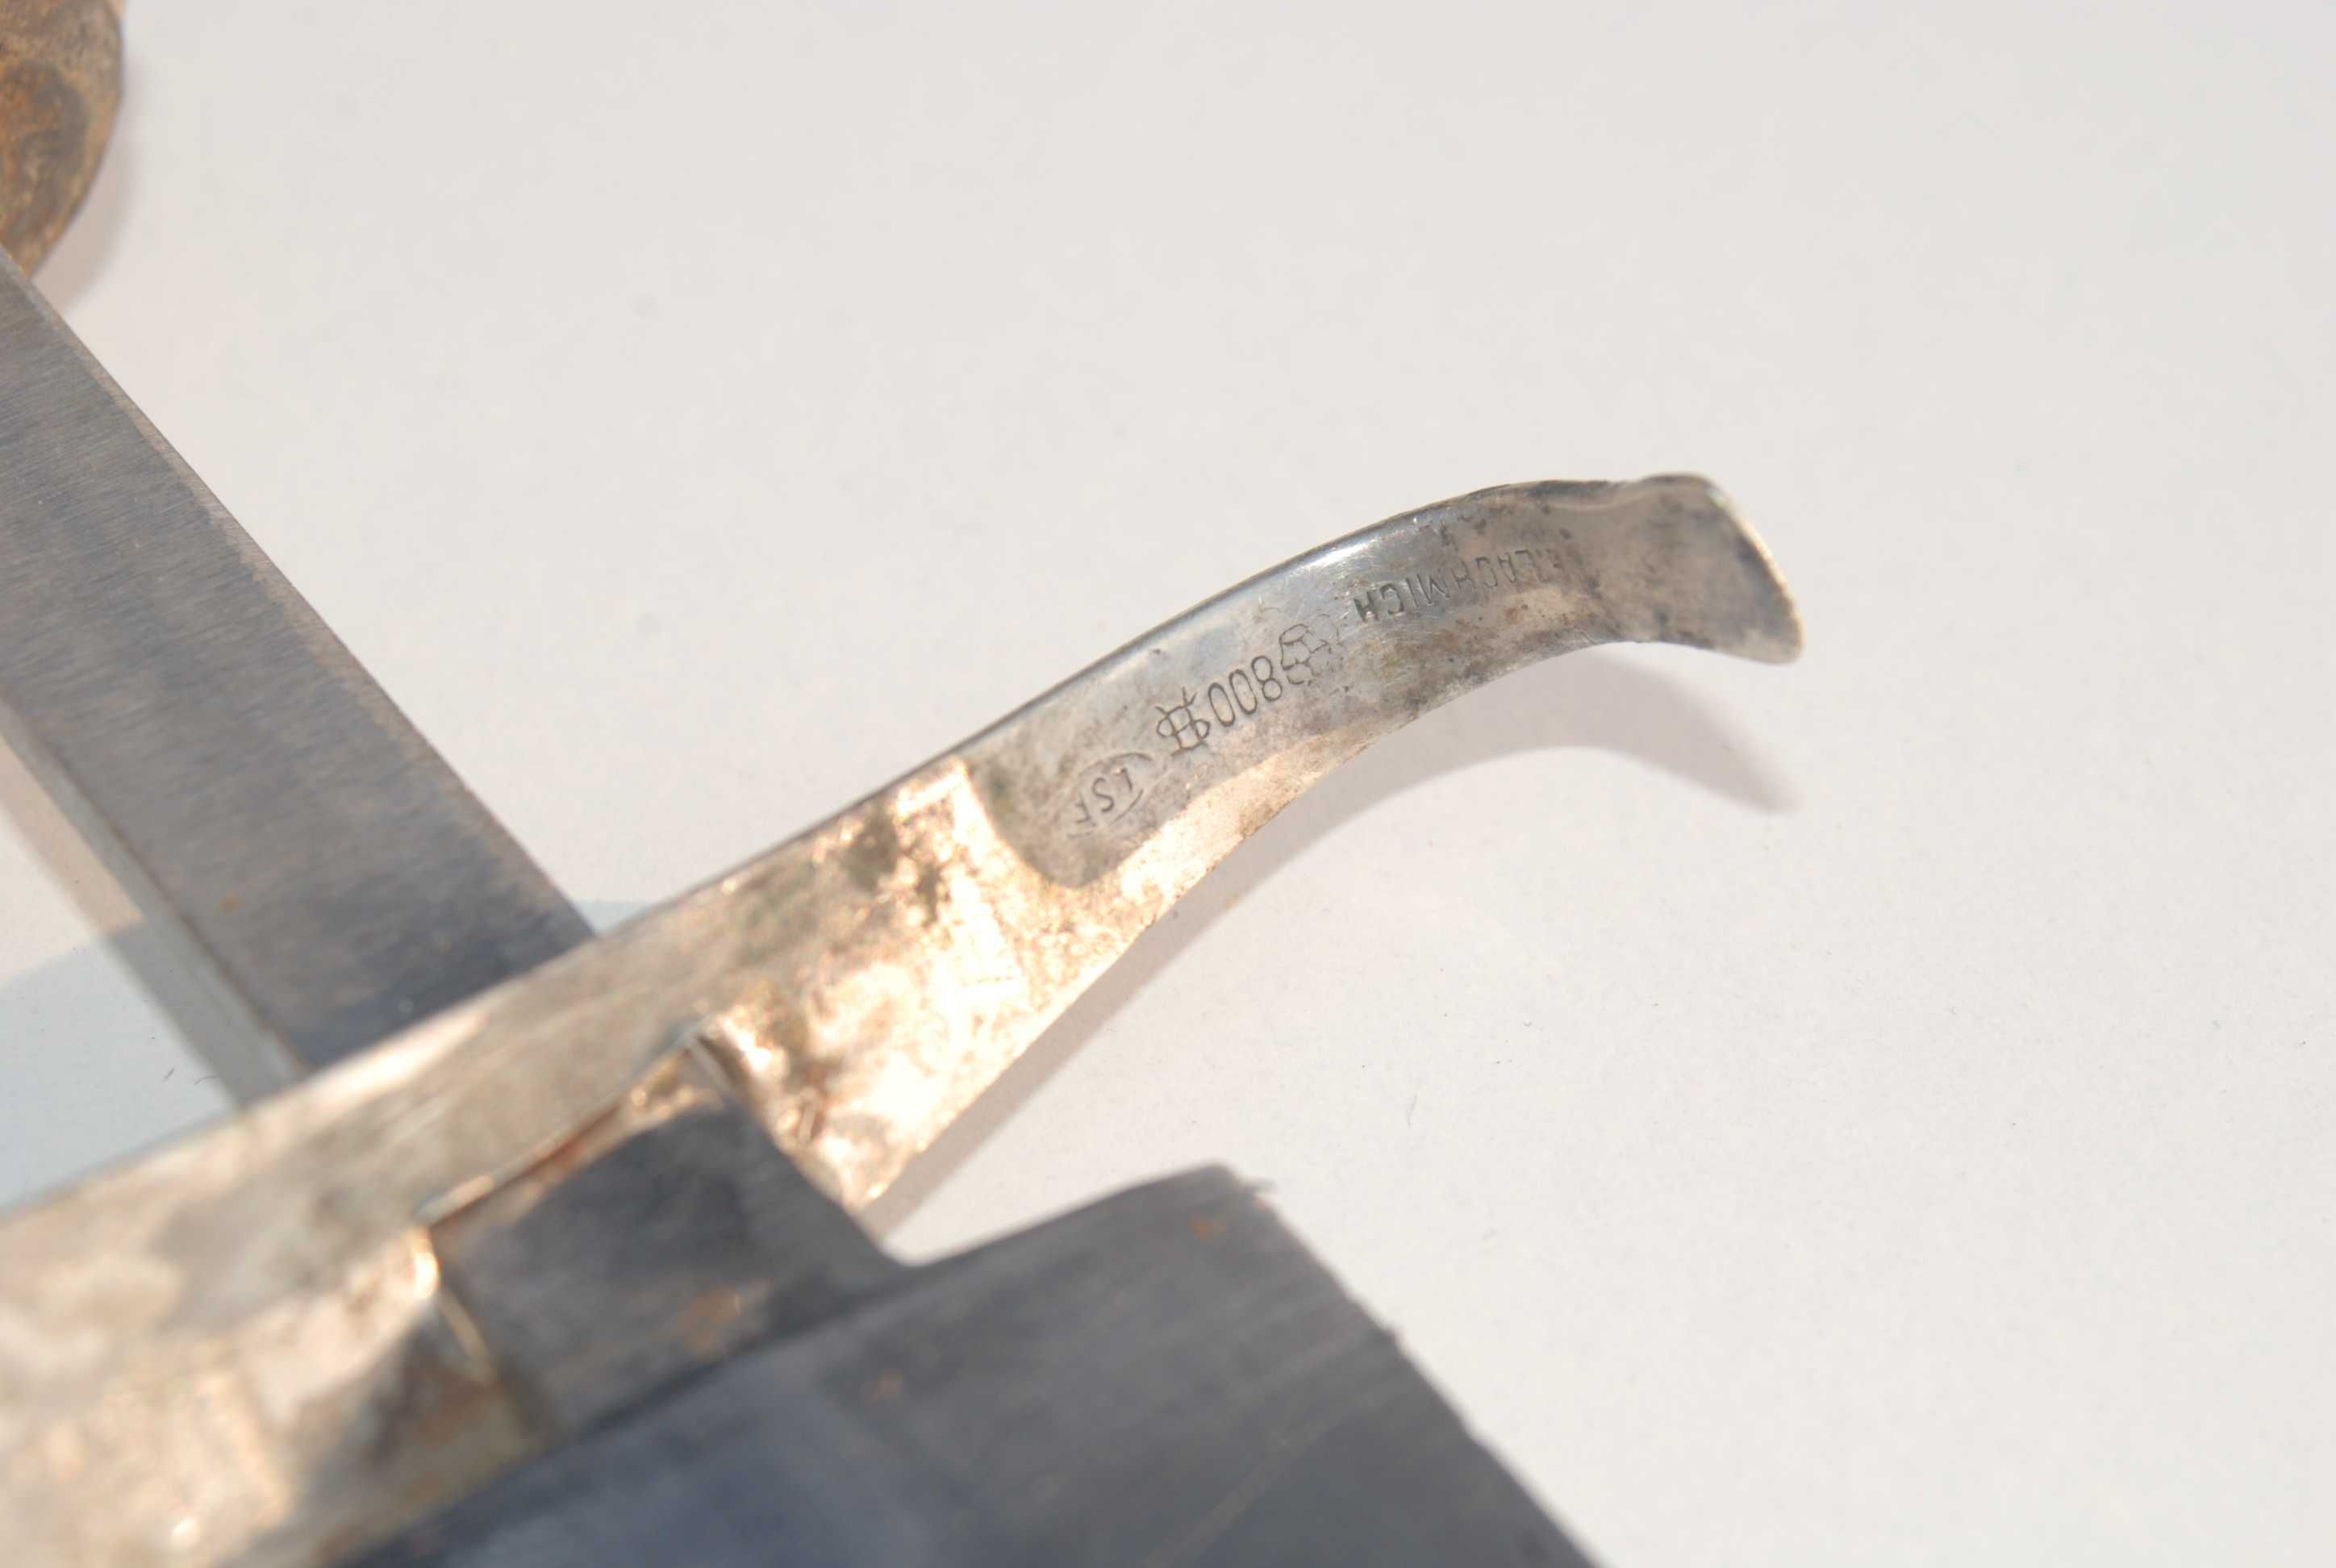 Stary kordzik sztylet nóż antyk sygnowany zabytek